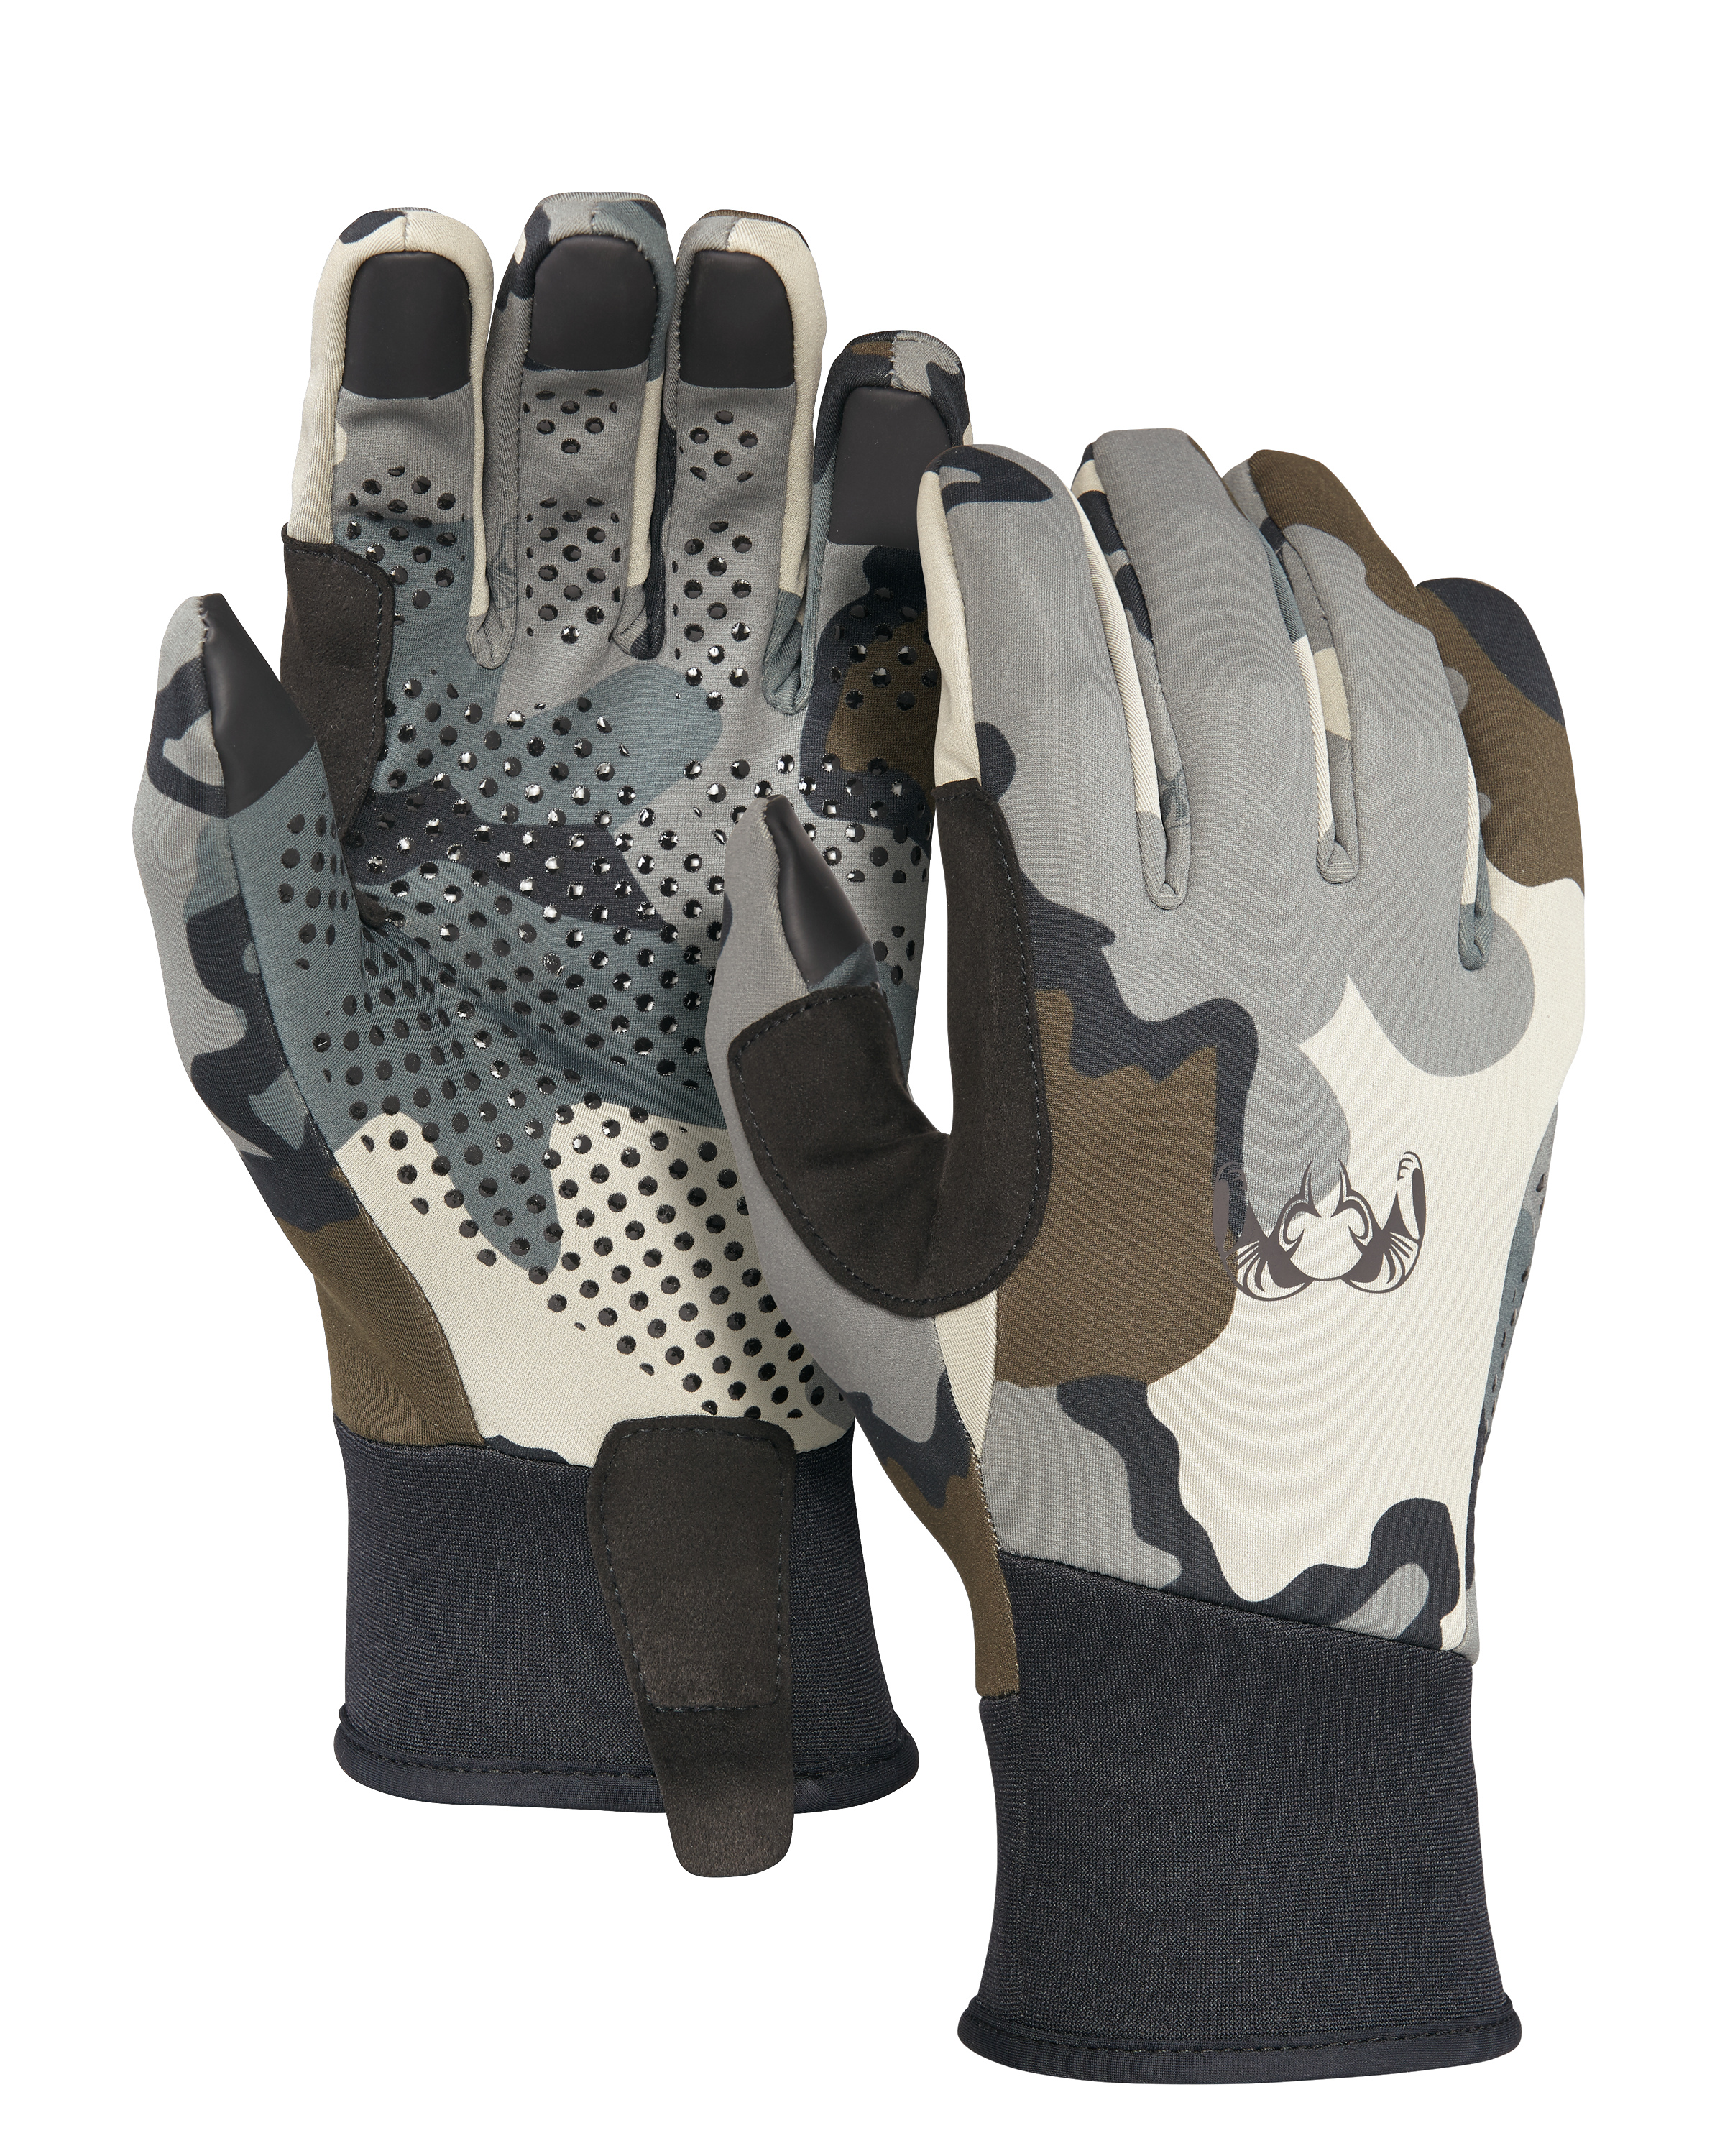 KUIU Axis Hunting Glove in Vias | Large